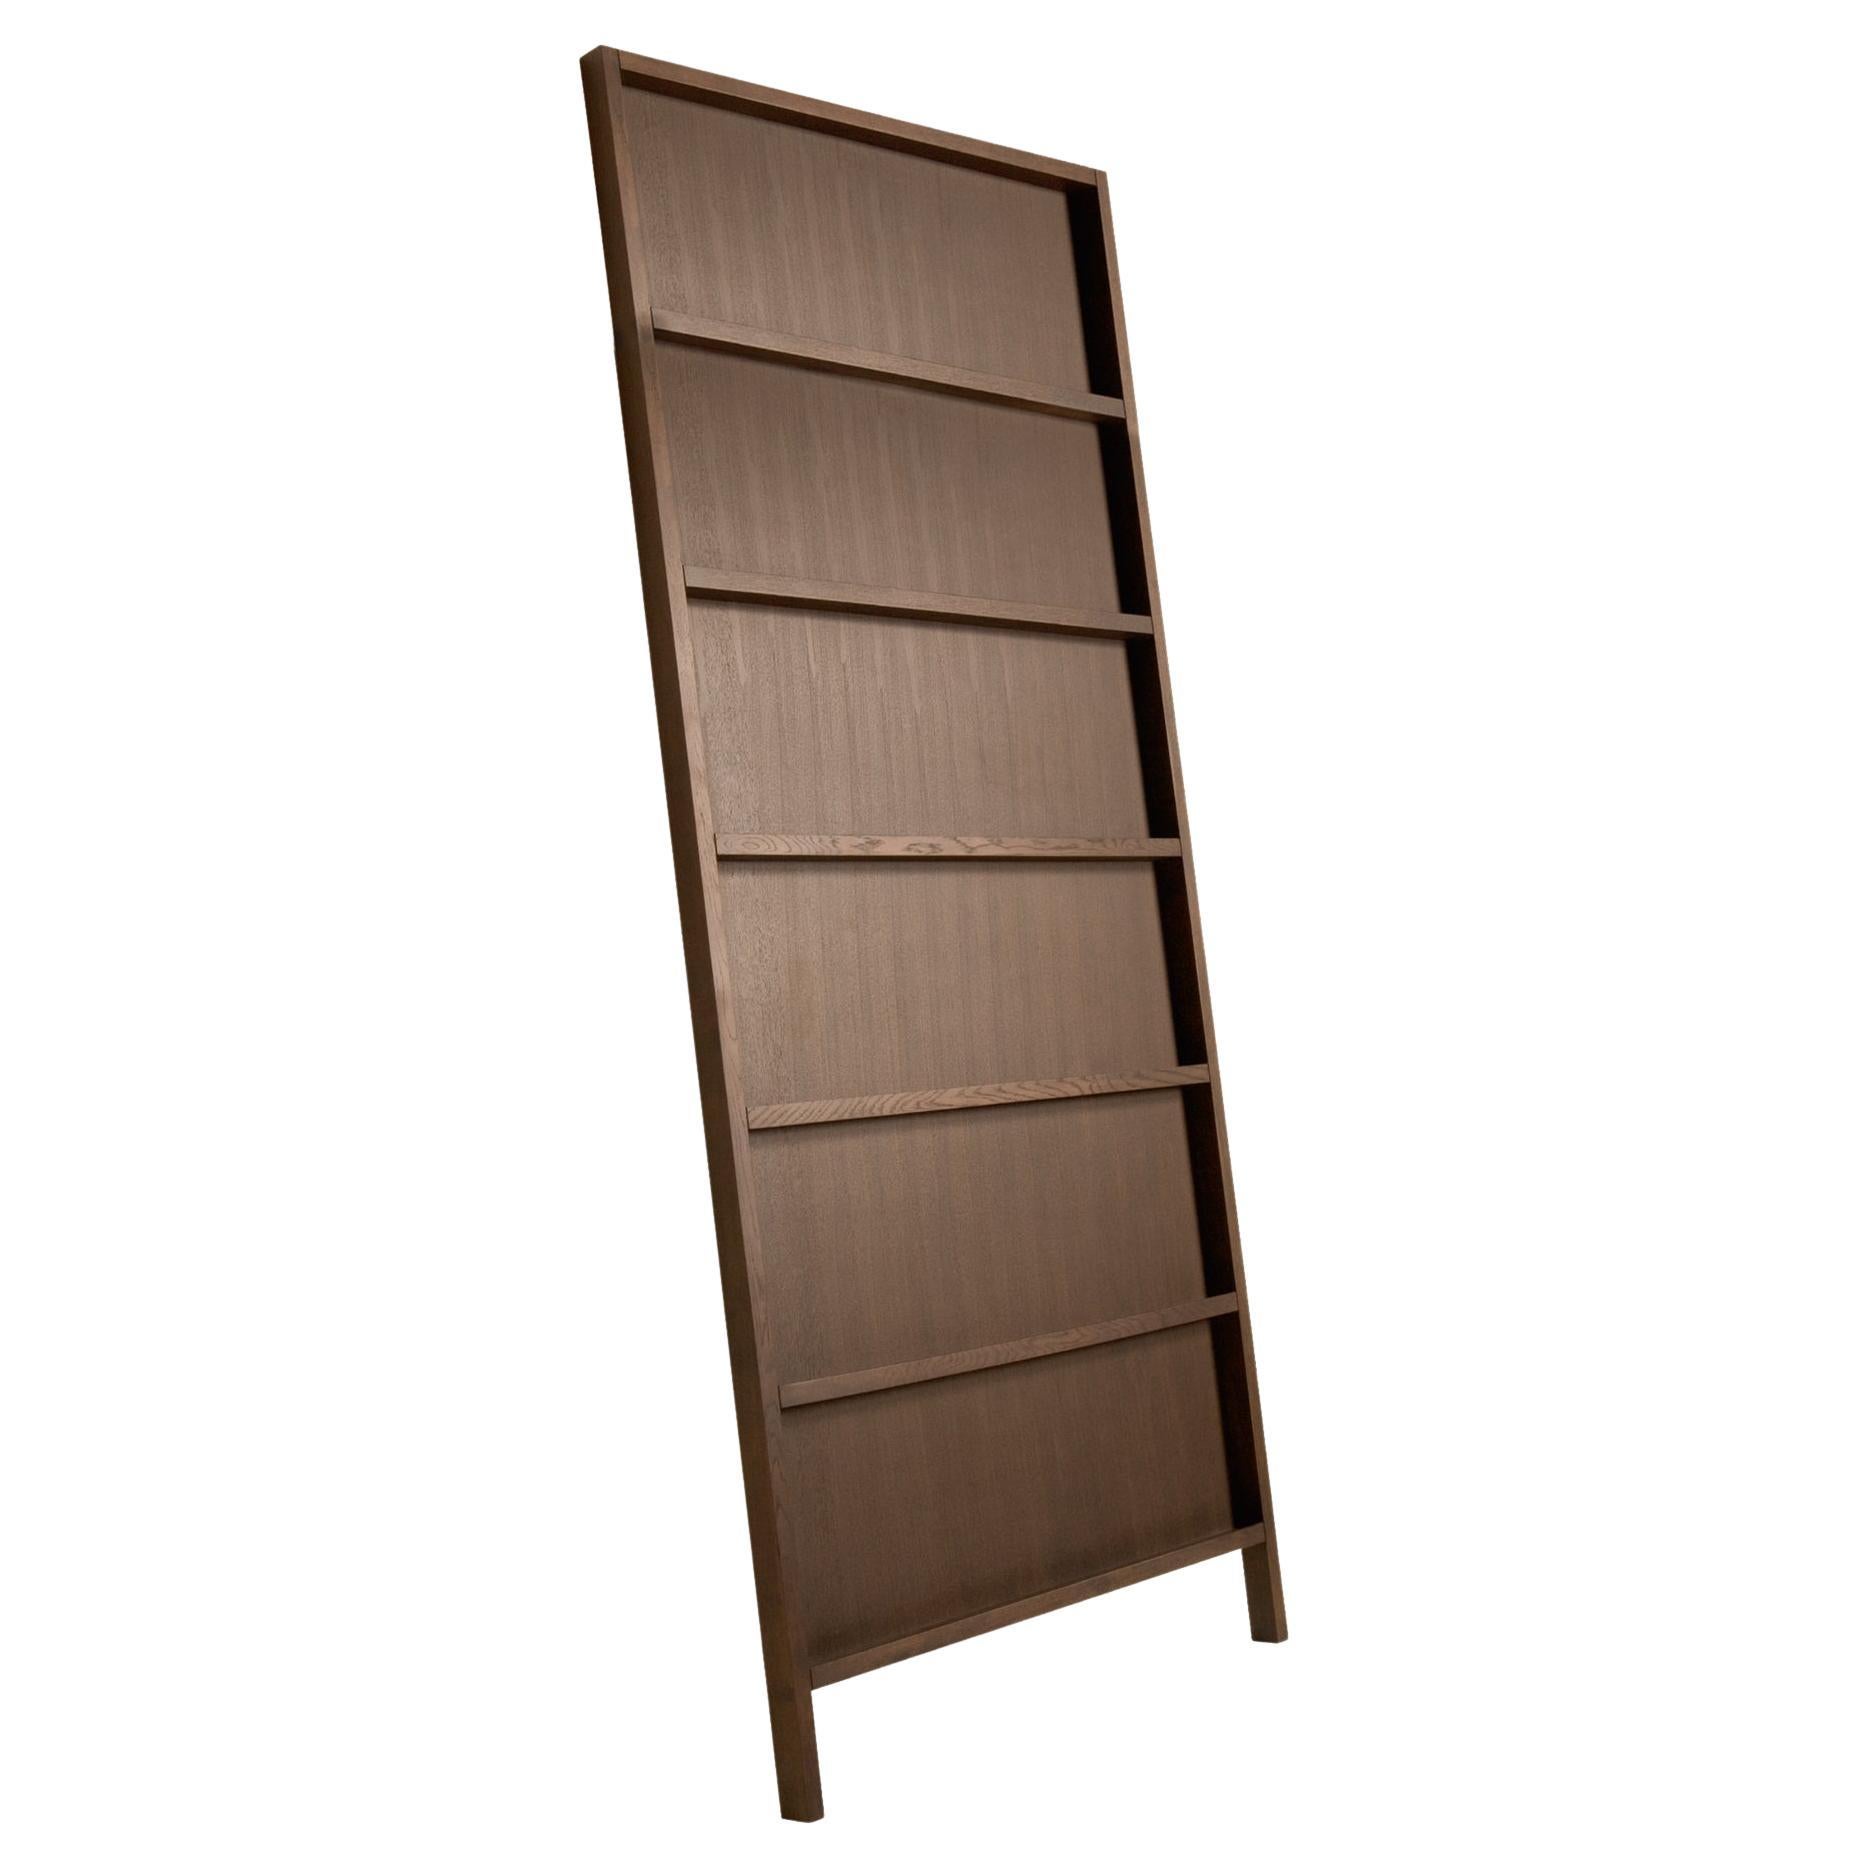 Moooi Oblique Big Cupboard/Wall Shelf in Cinnamon Stained Oak For Sale